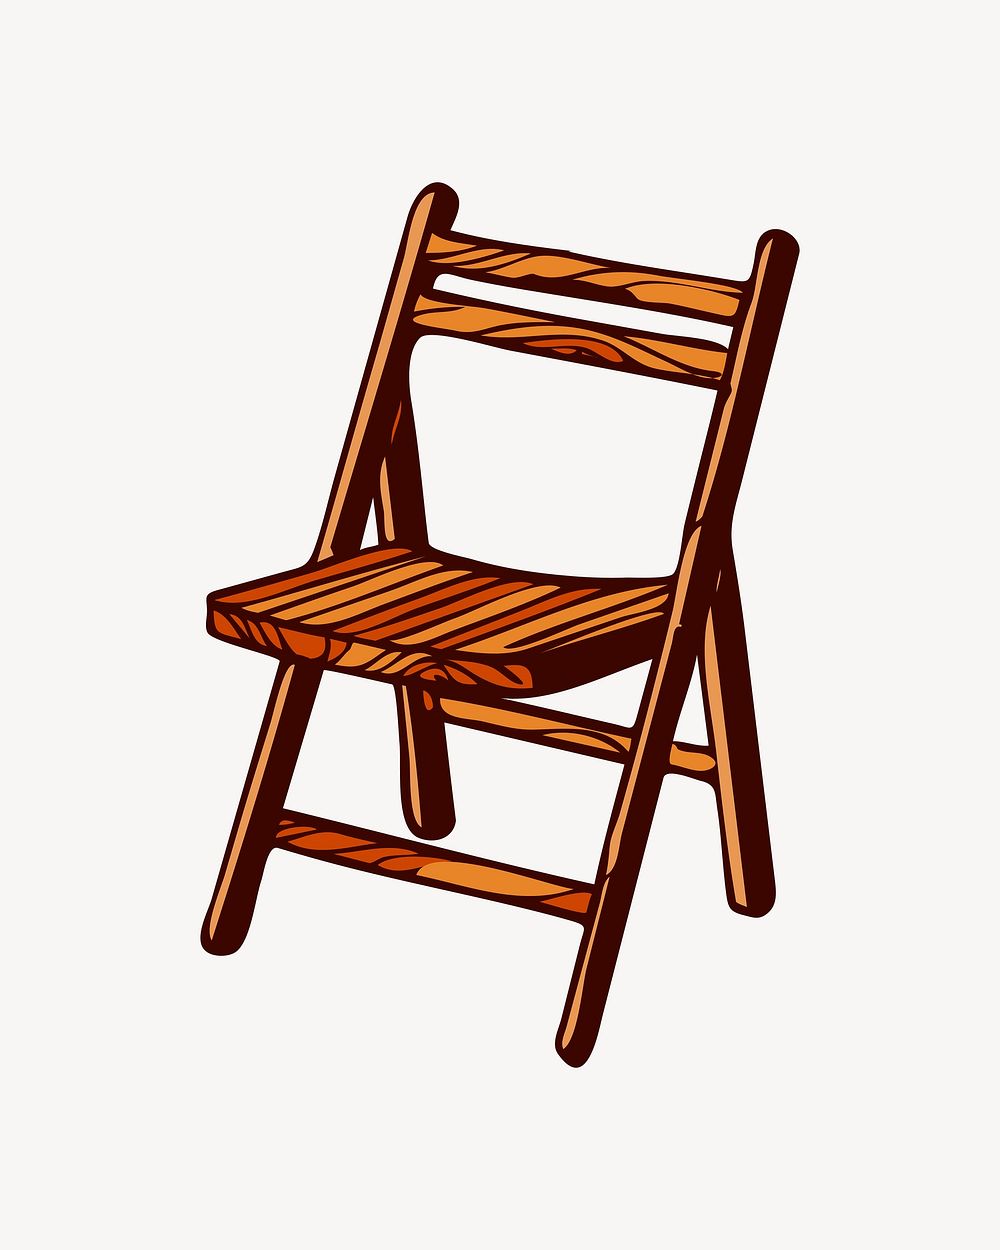 Wooden chair illustration, clip art. Free public domain CC0 image.